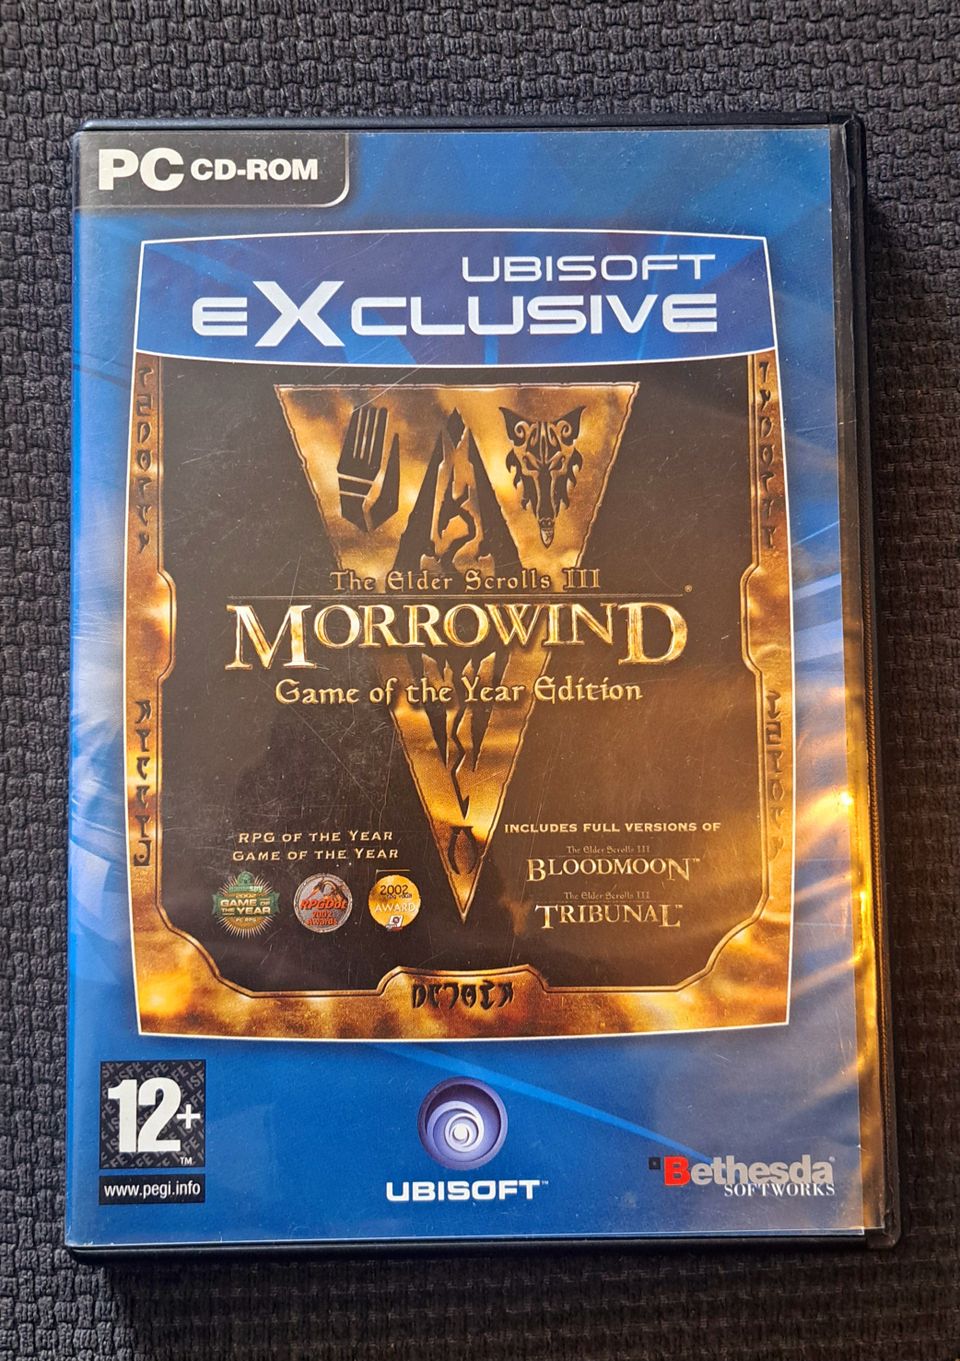 The Elder Scrolls III: Morrorwind & Bloodmoon